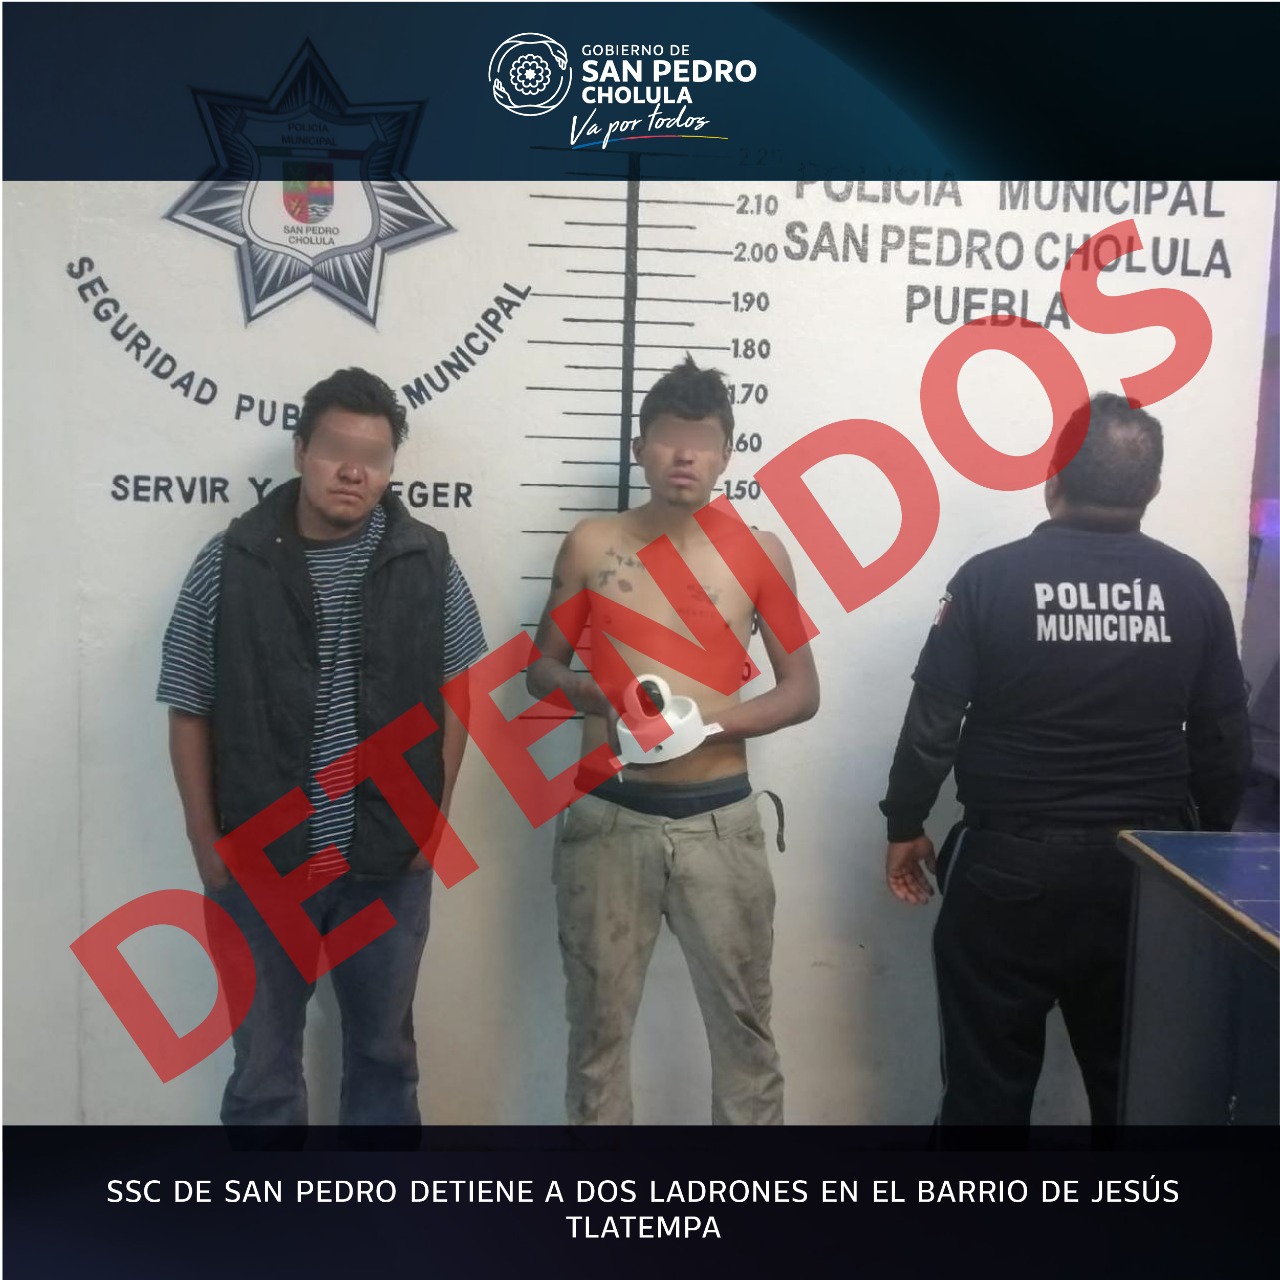 SSC de San Pedro detiene a dos ladrones en el barrio de Jesús Tlatempa